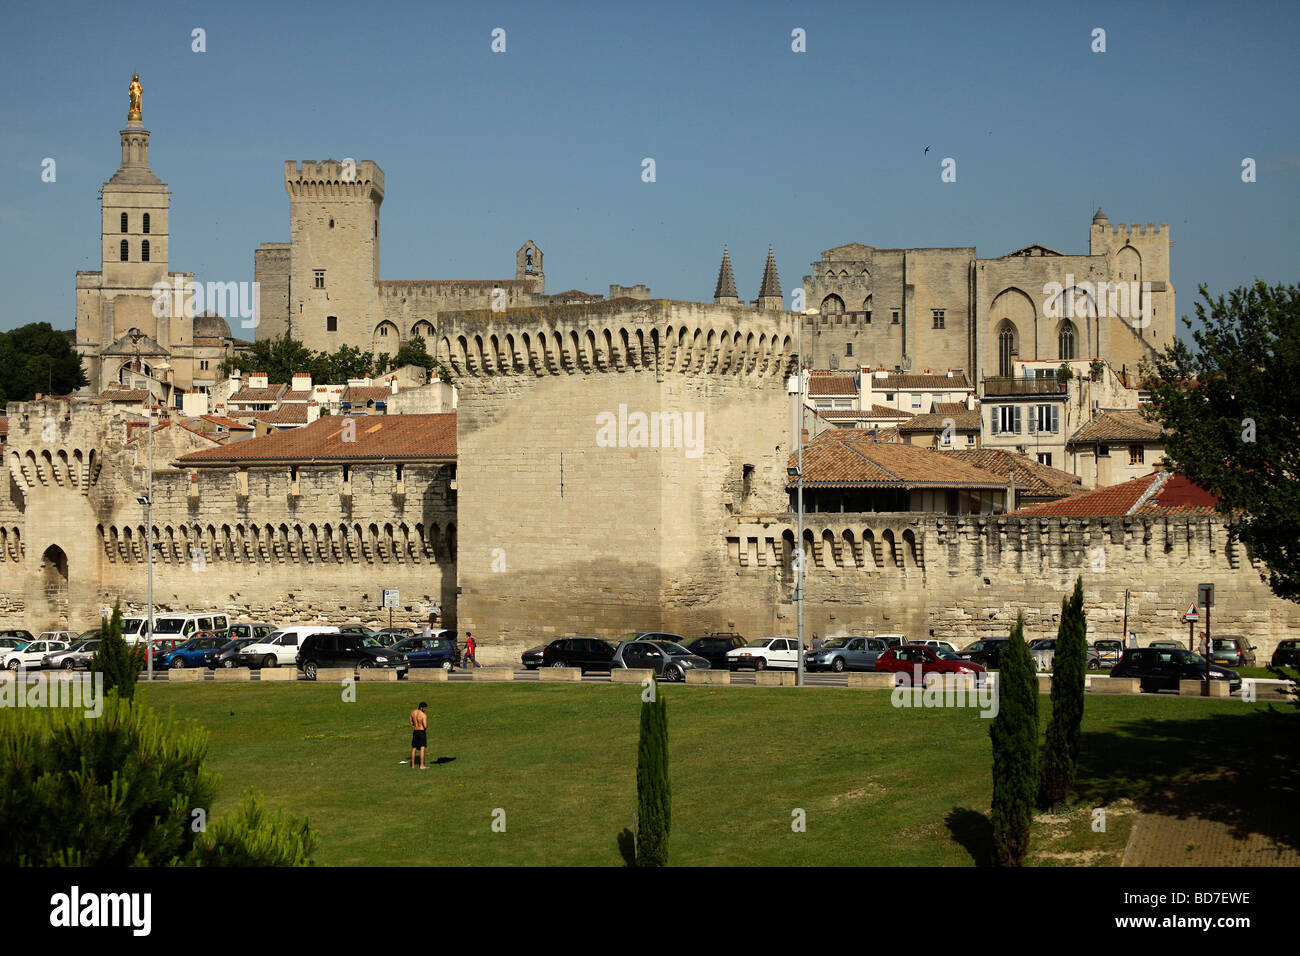 Les murailles de la ville et le Palais des Papes Pape s Palace en Avignon Provence France Europe Banque D'Images